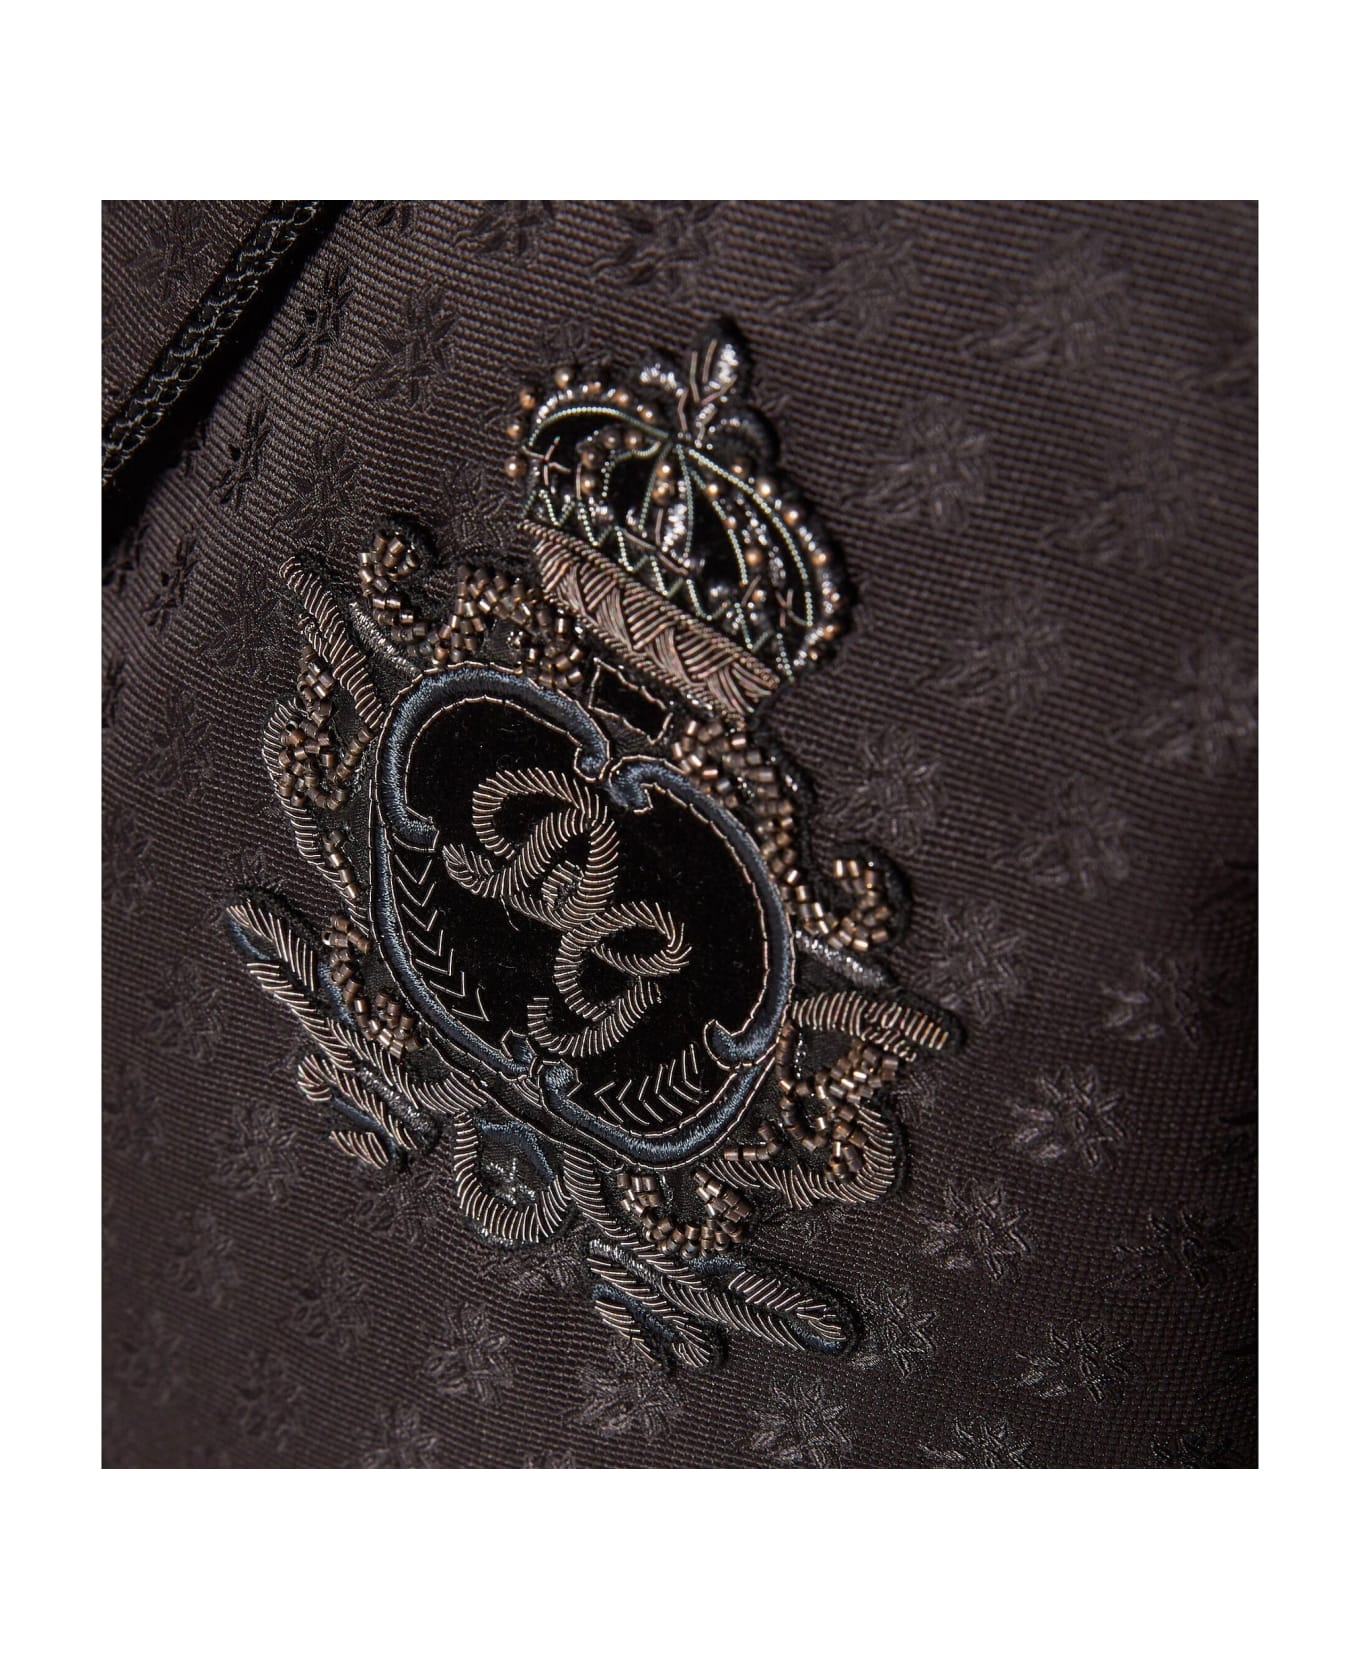 Dolce & Gabbana Jacquard Tuxedo Jacket - Black ジャケット